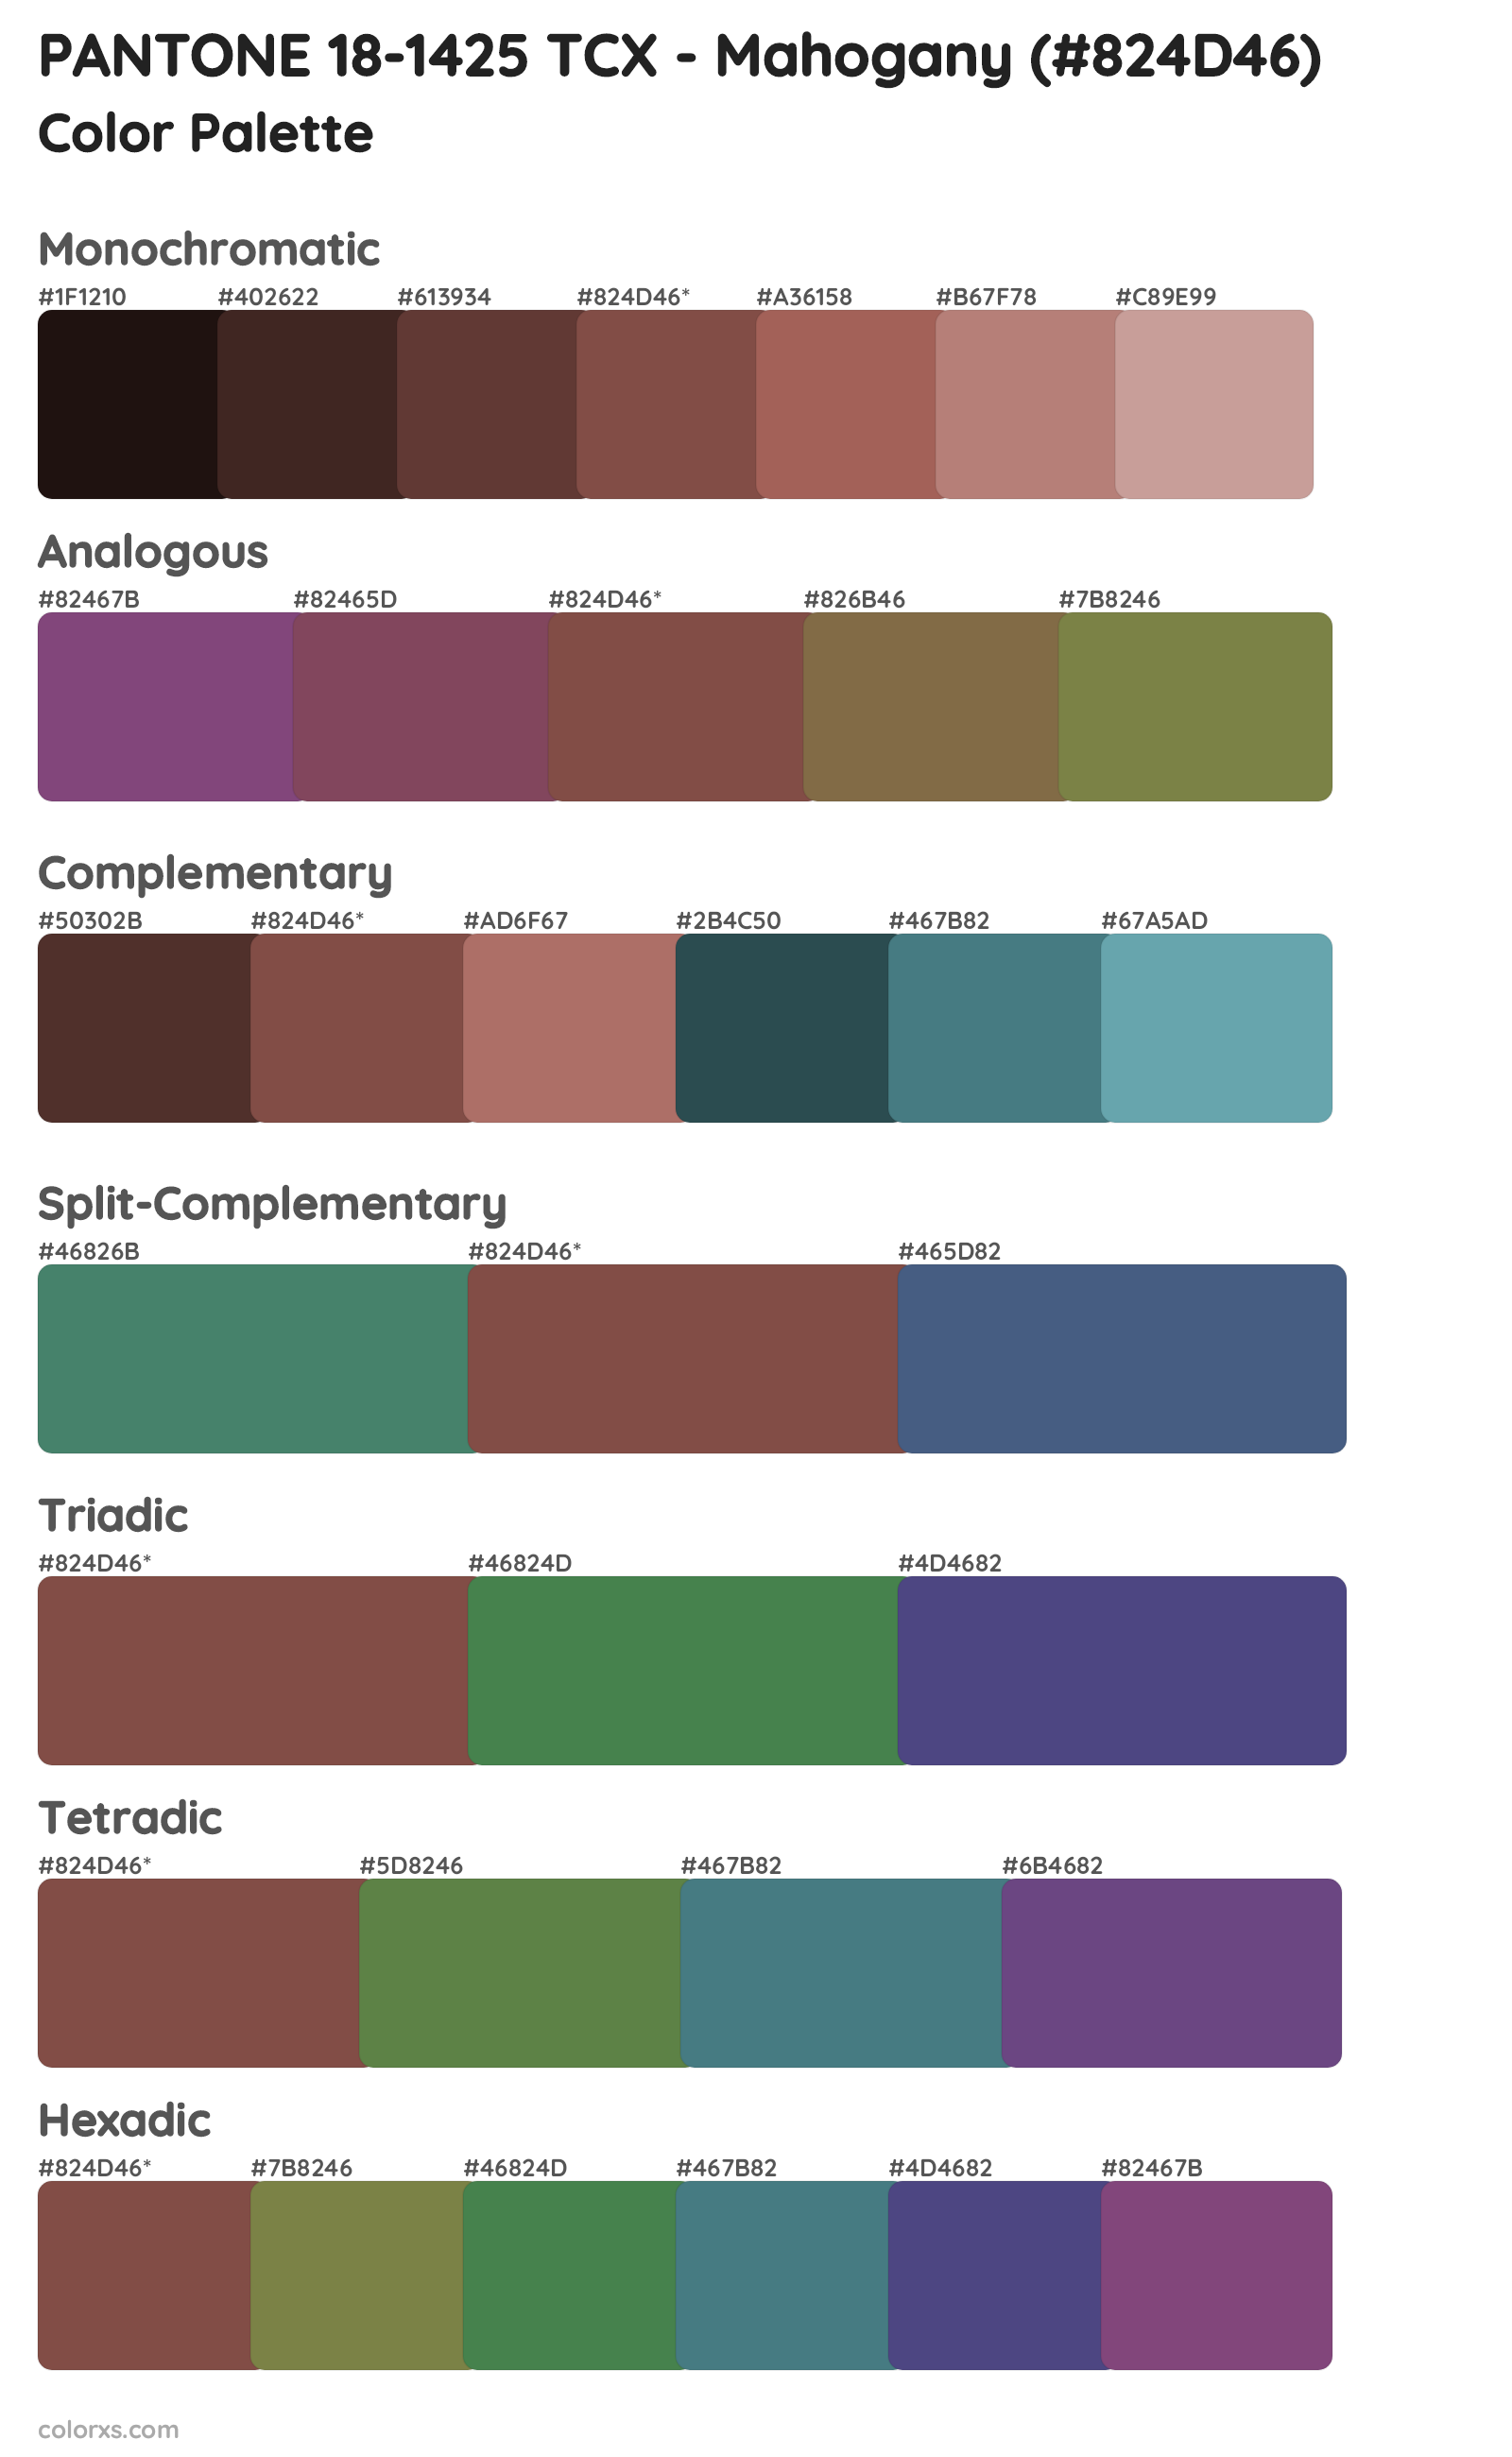 PANTONE 18-1425 TCX - Mahogany Color Scheme Palettes